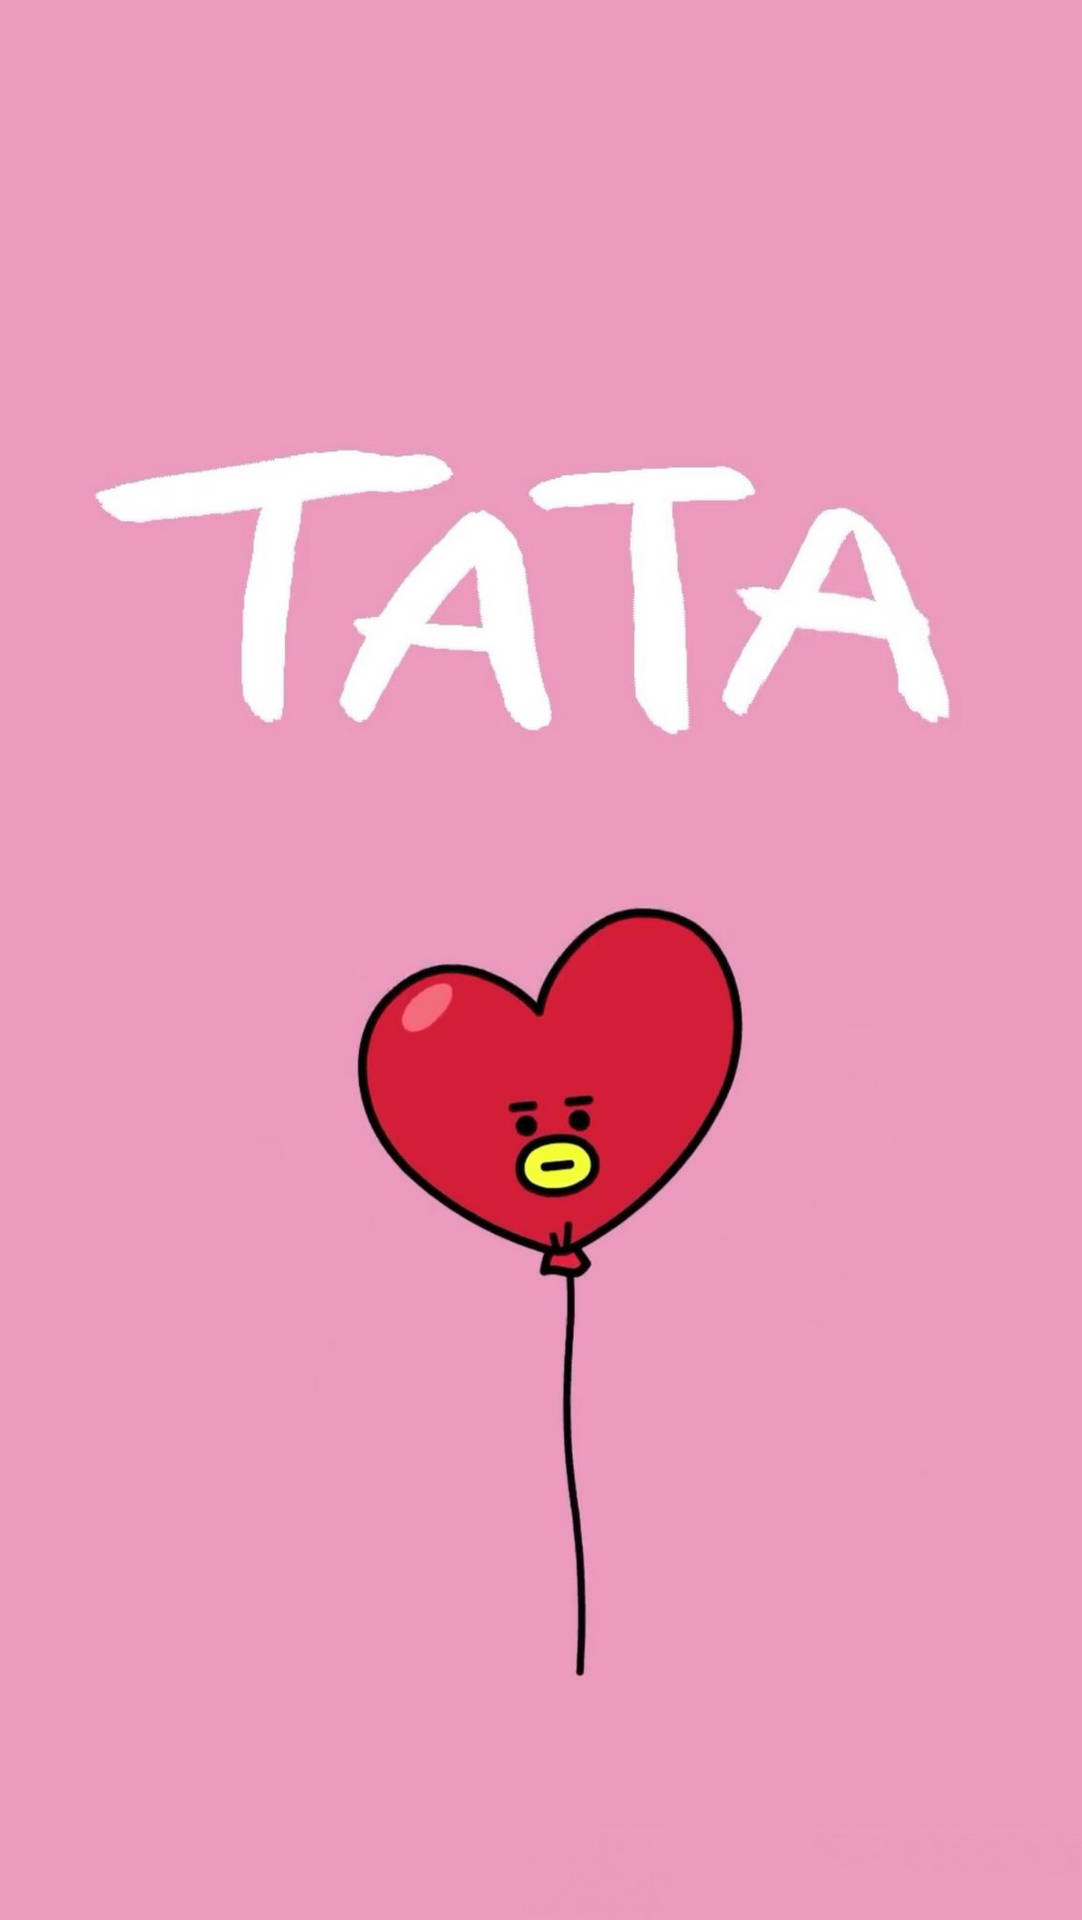 Bt21 Tata Balloon